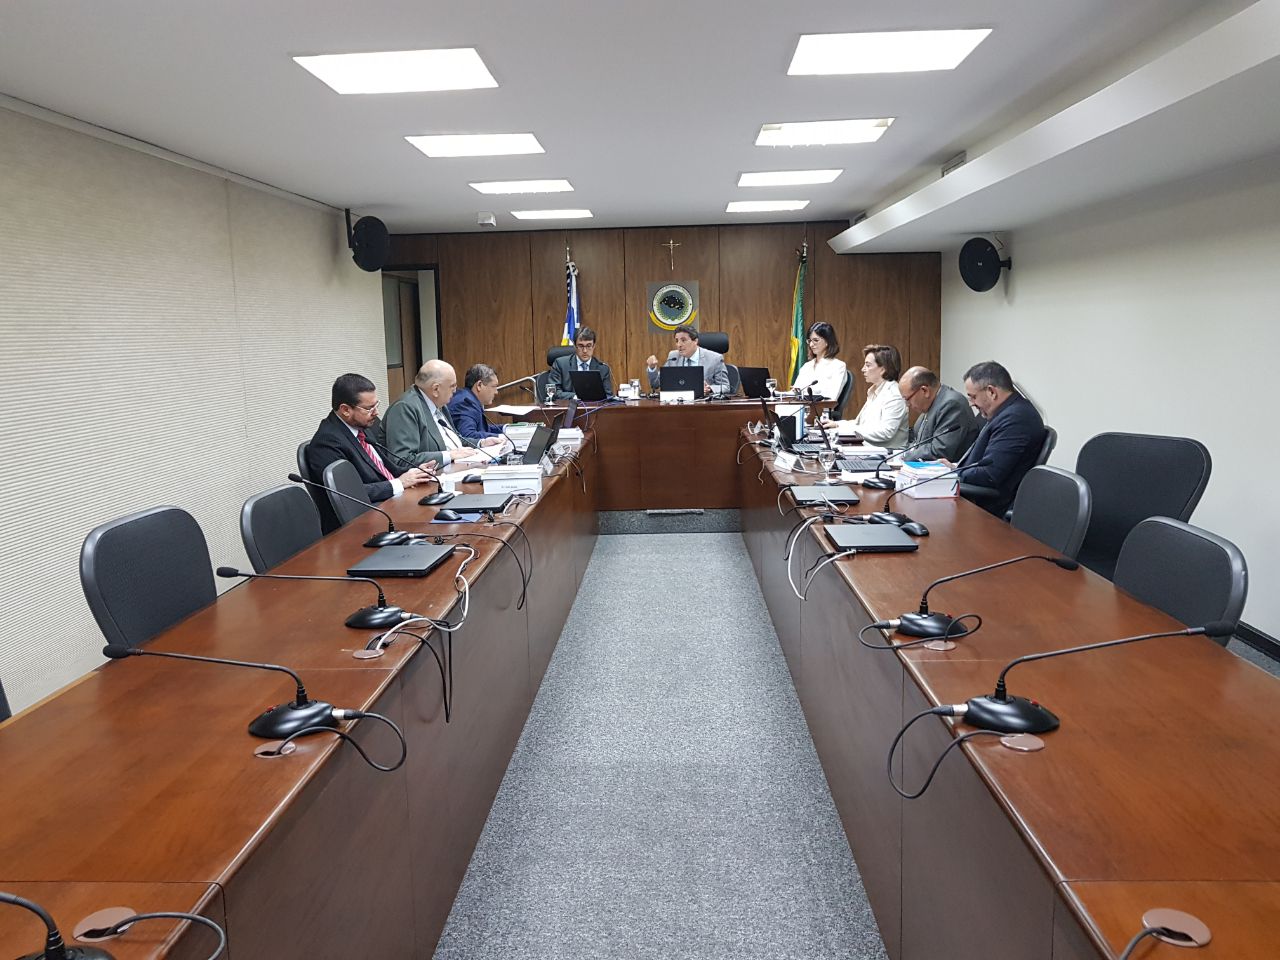 INSTITUCIONAL: Escolhidos nova coordenadora da Cojucrim e dirigentes das Seccionais da 1ª Região para o biênio 2018-2020